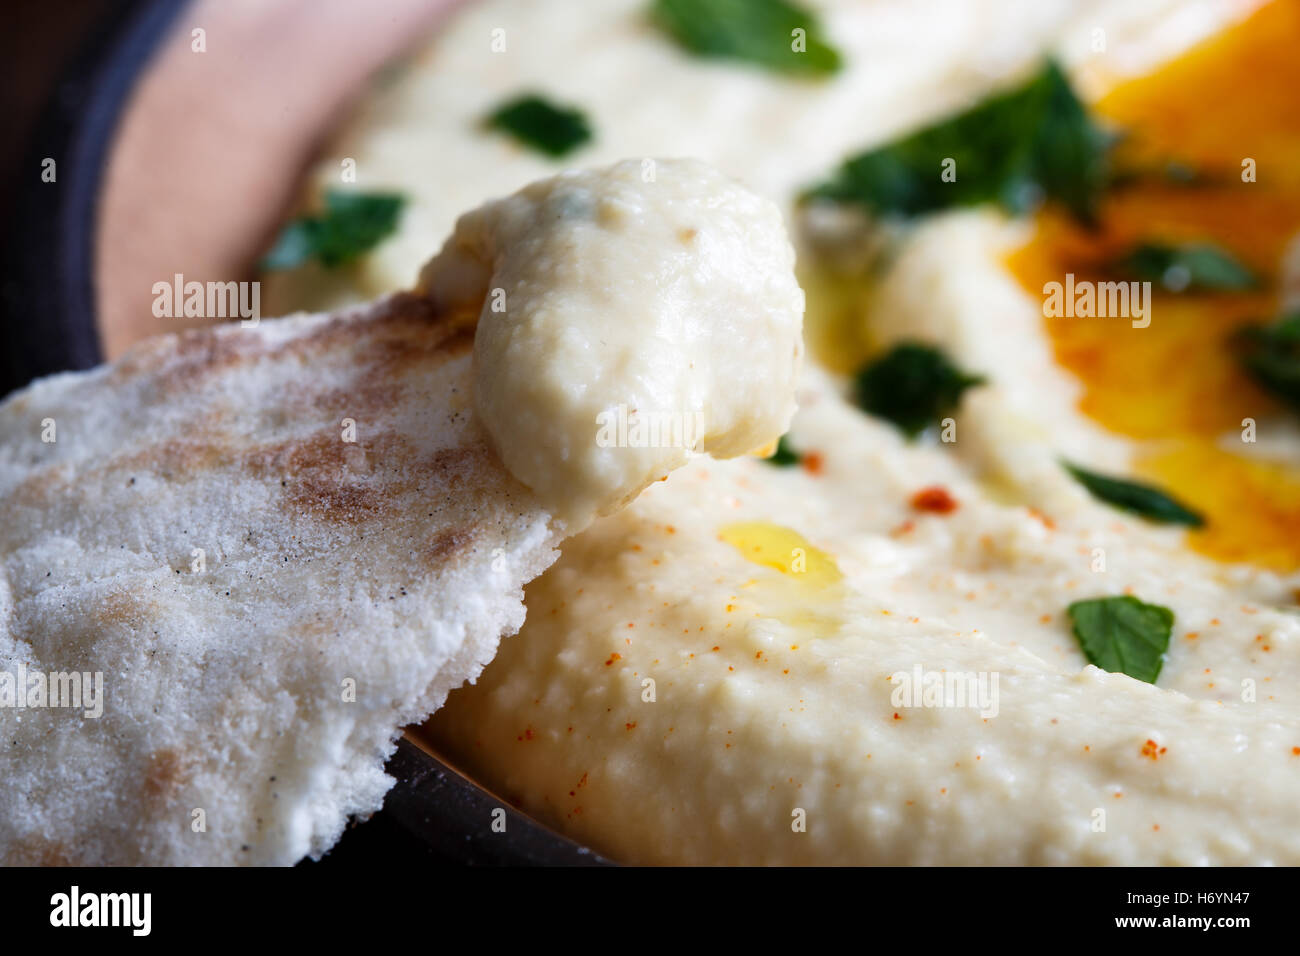 Dettaglio di hummus su pane pita. Piatto di hummus in background. Foto Stock